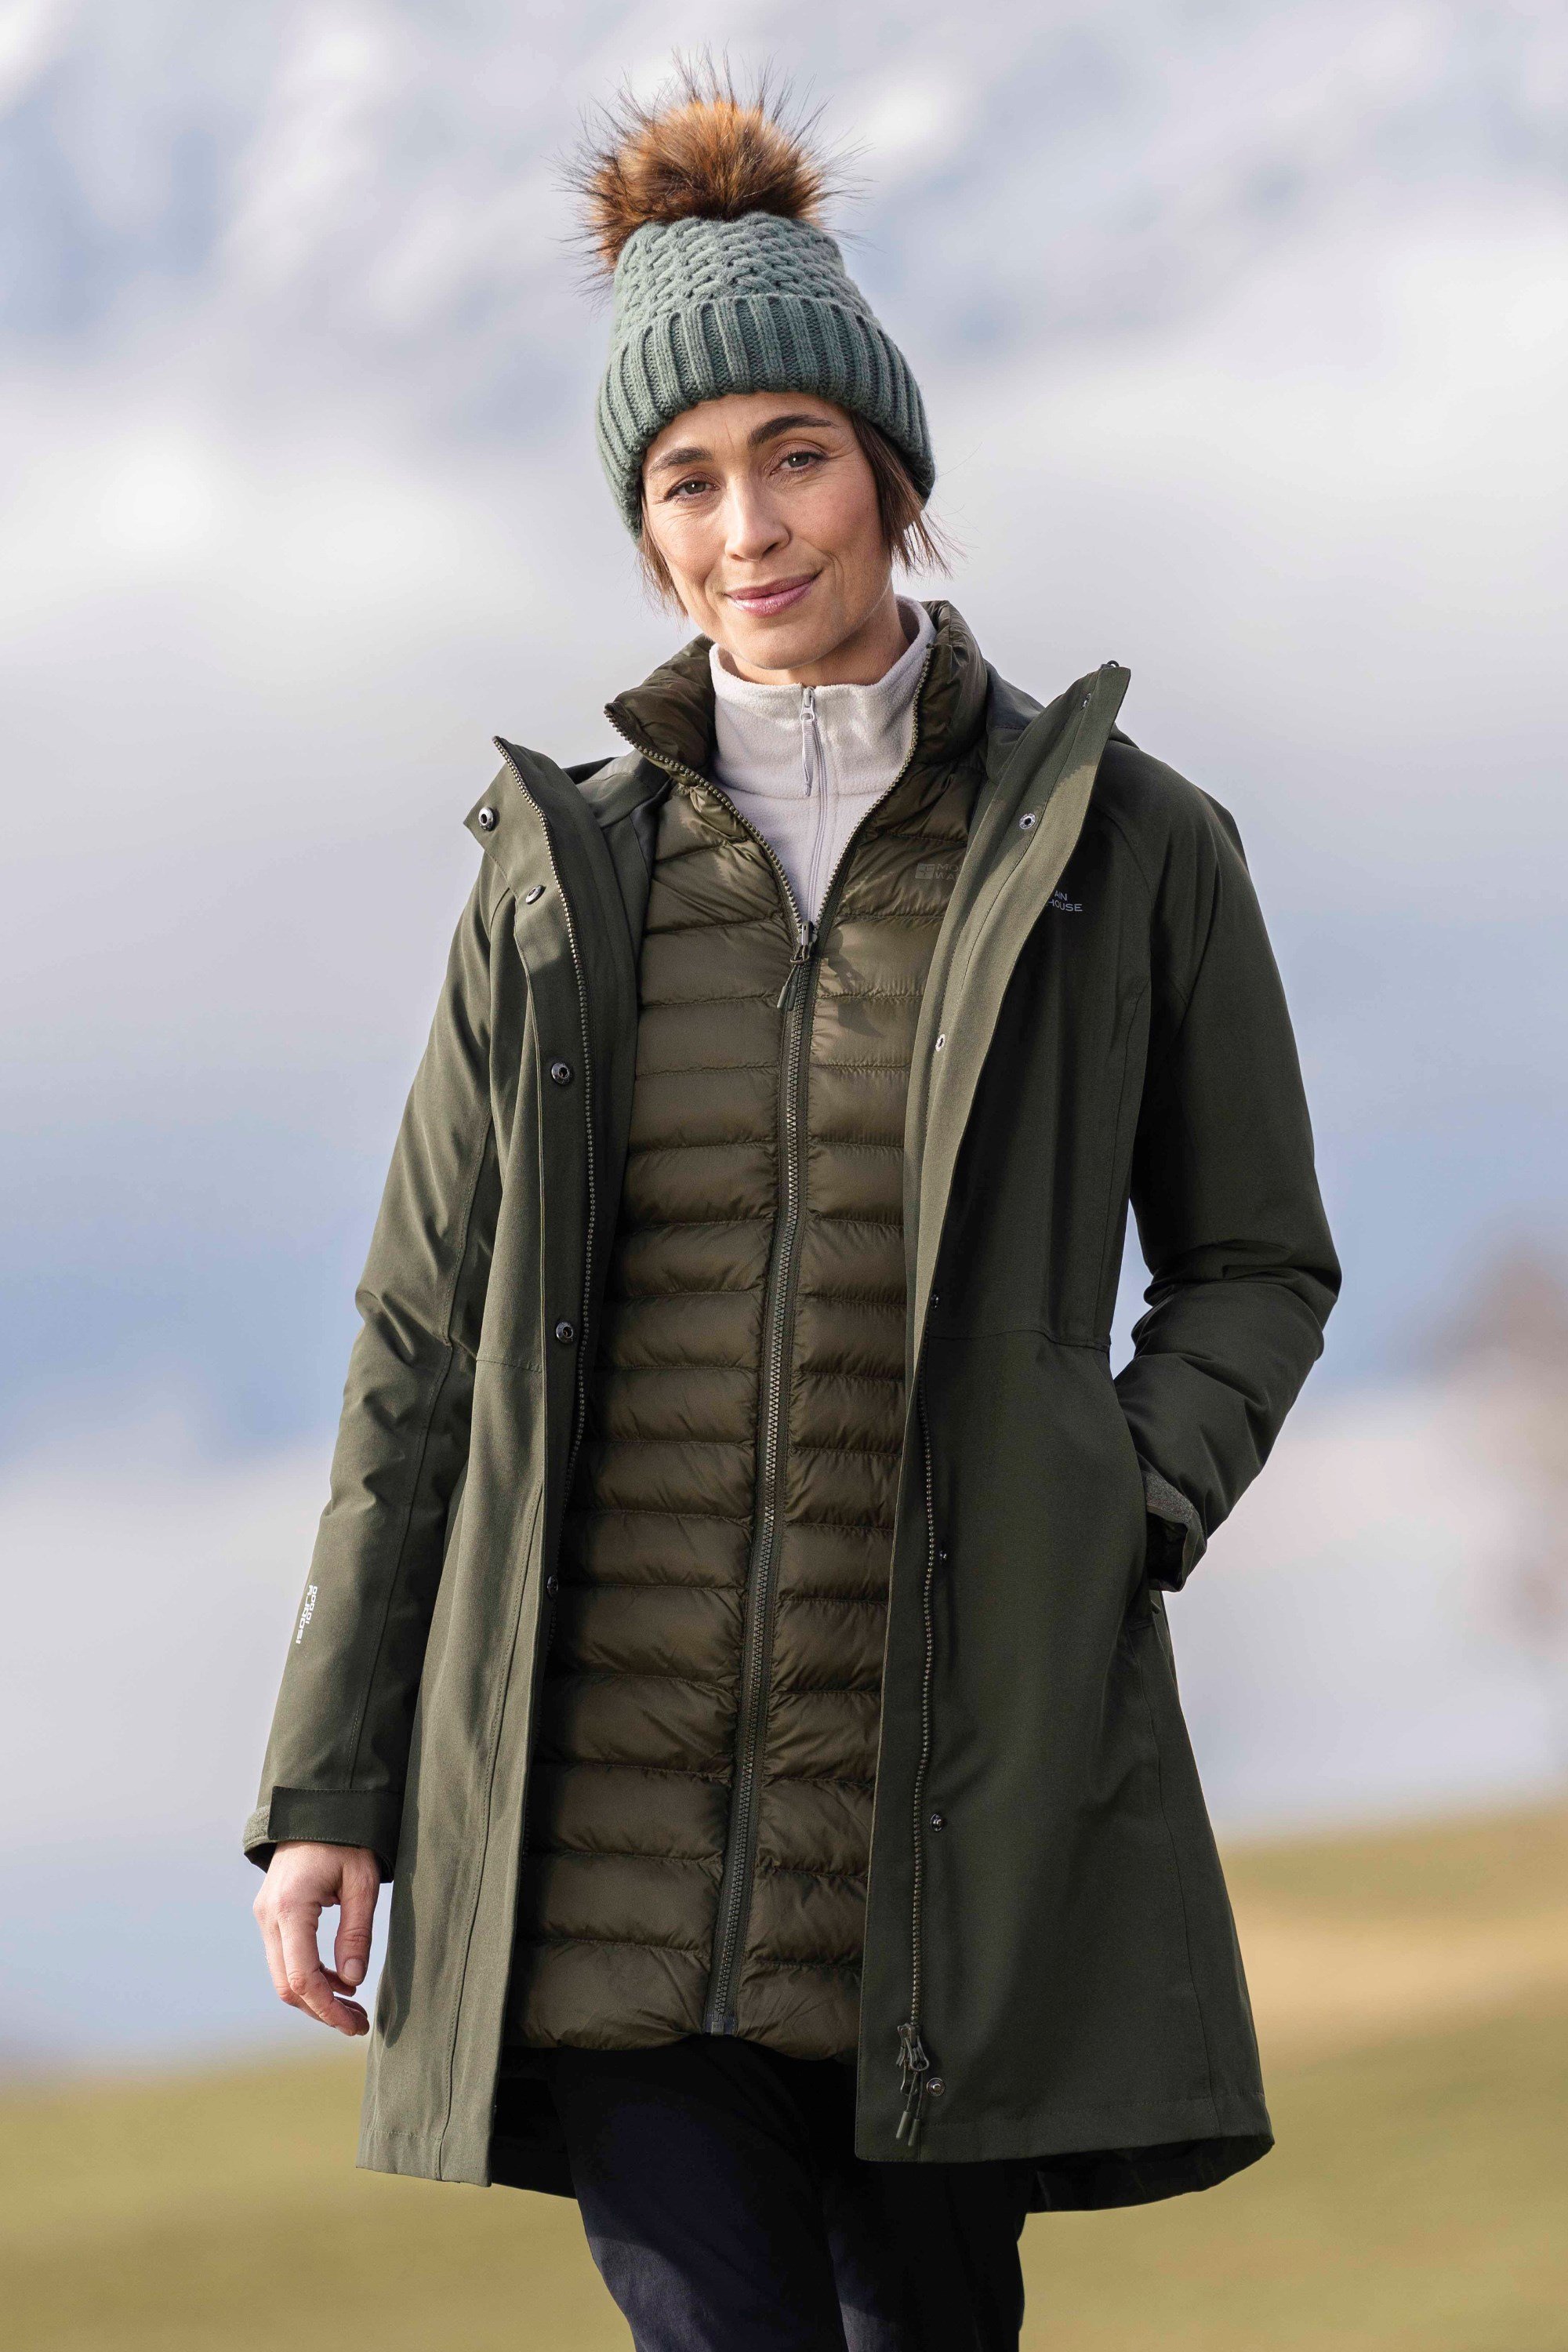 Alaskan Womens 3 in 1 Long Waterproof Jacket - Green